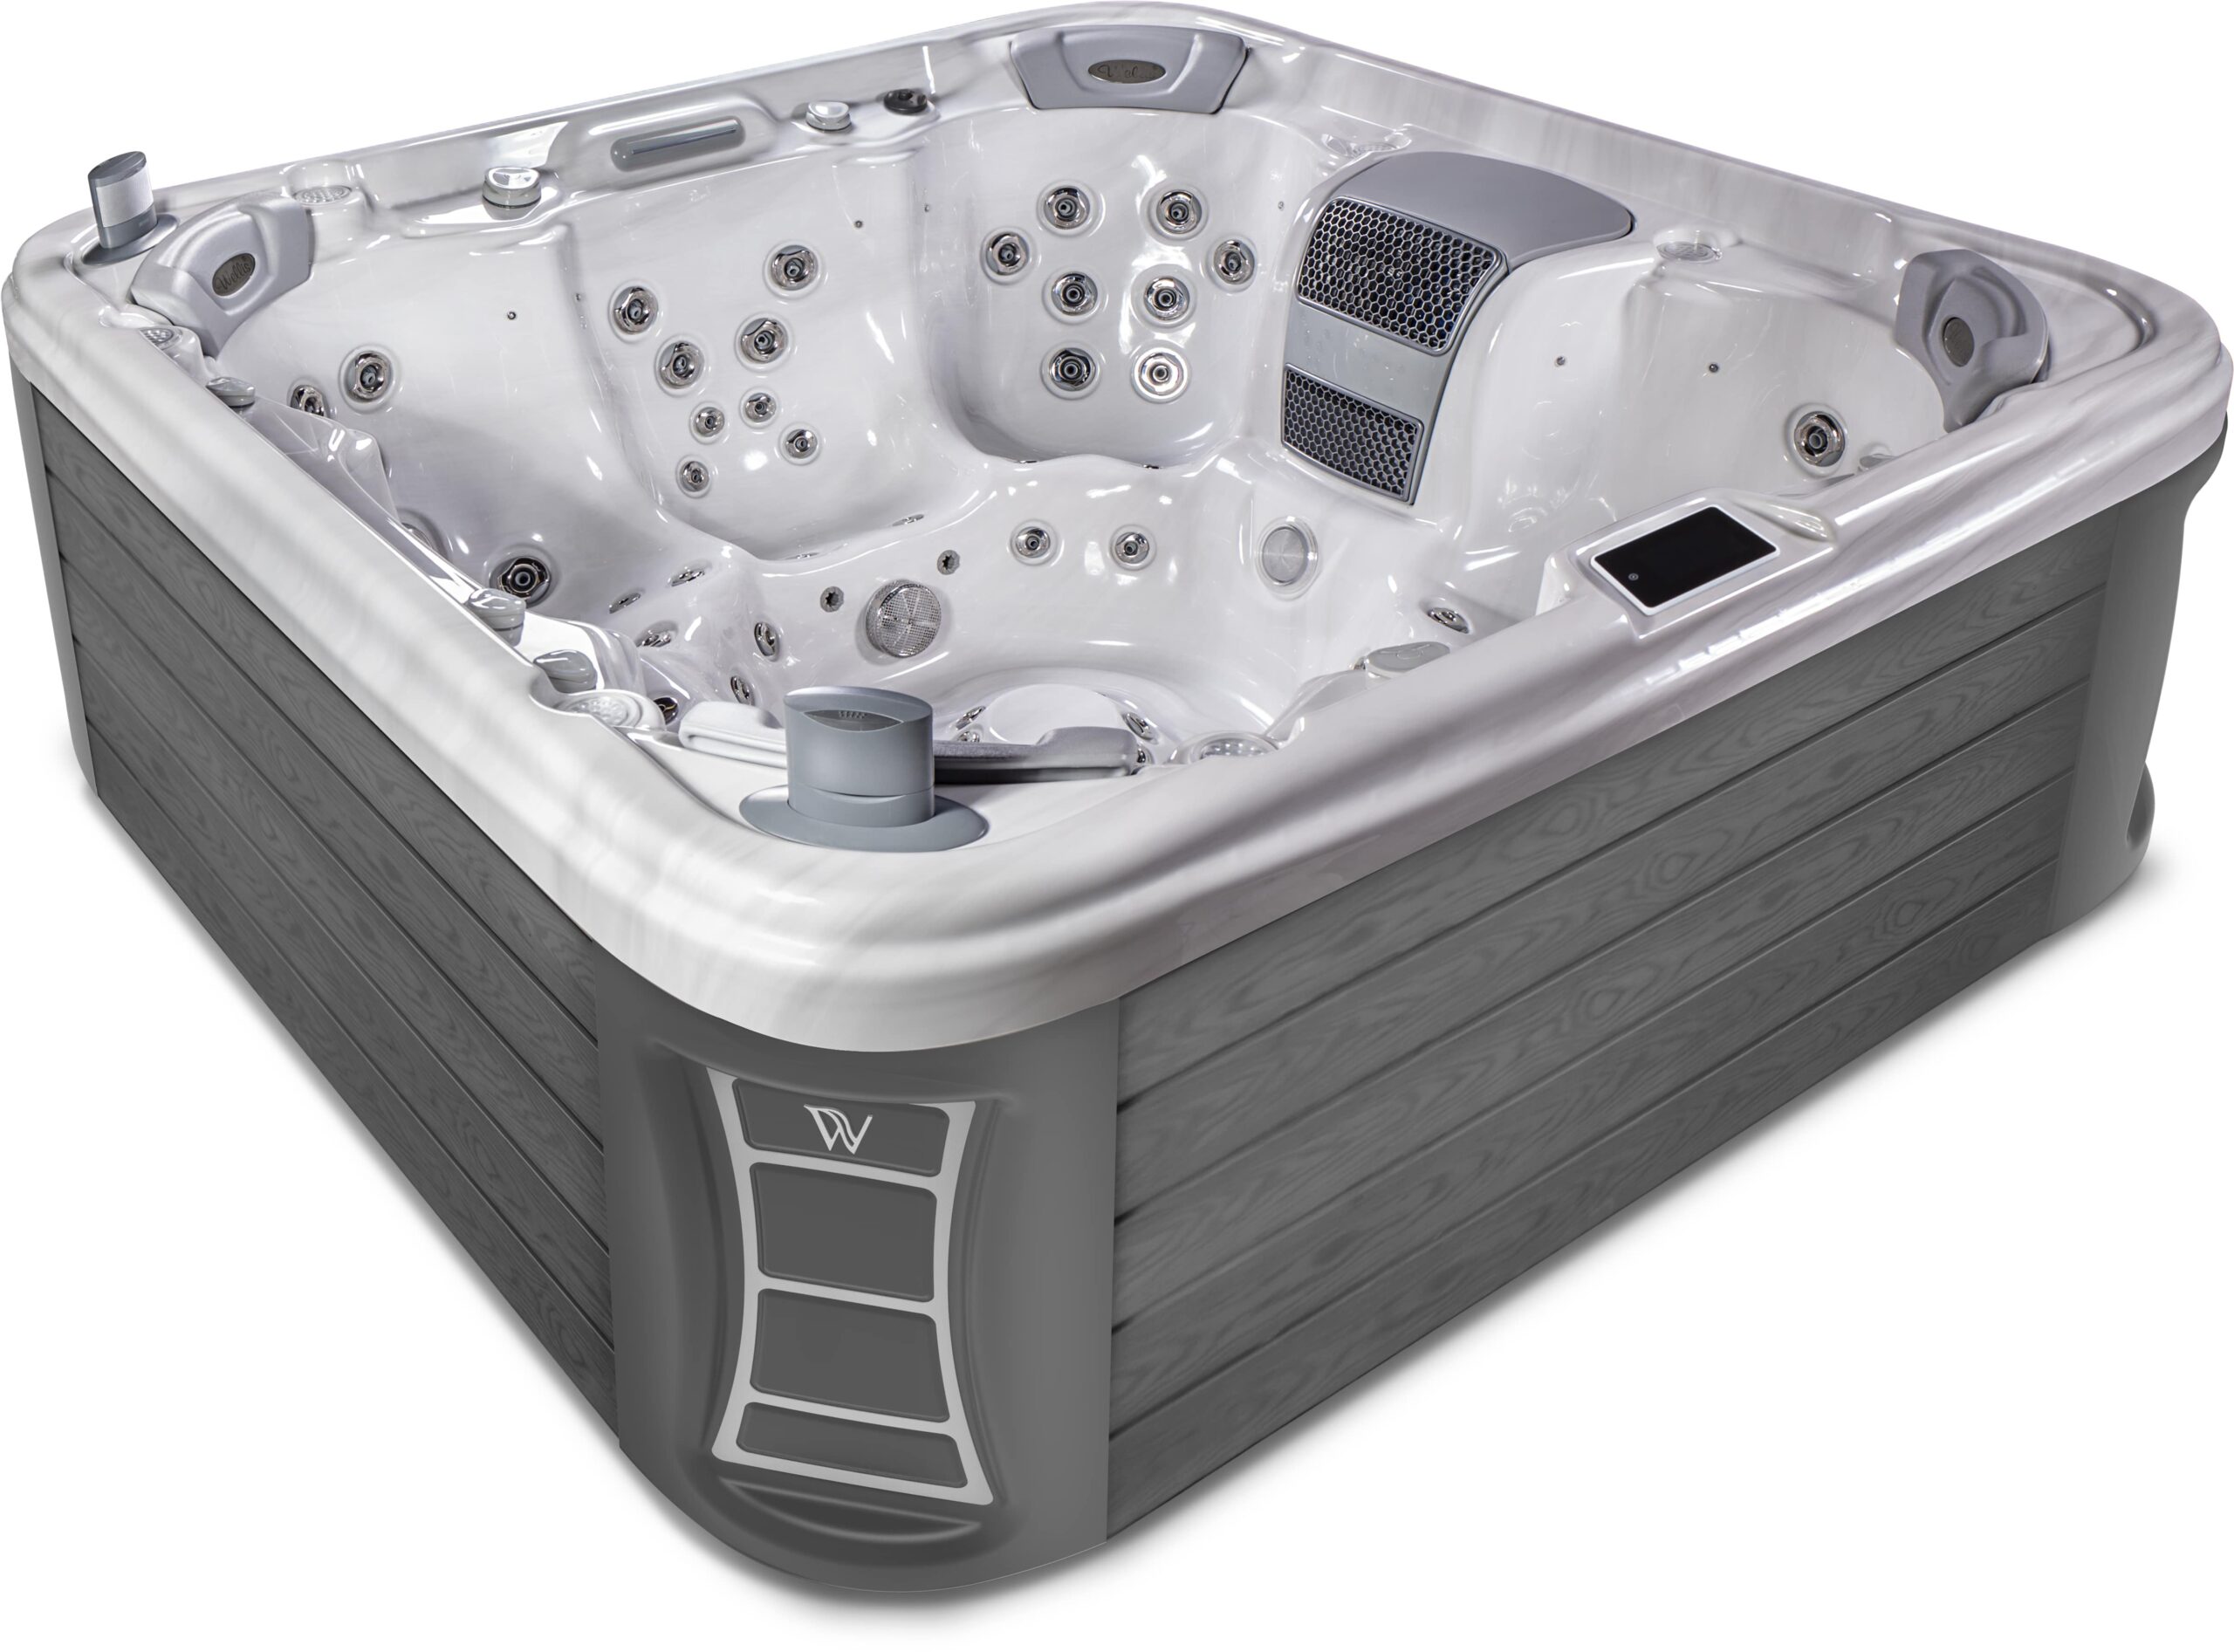 Grey luxury hot tub